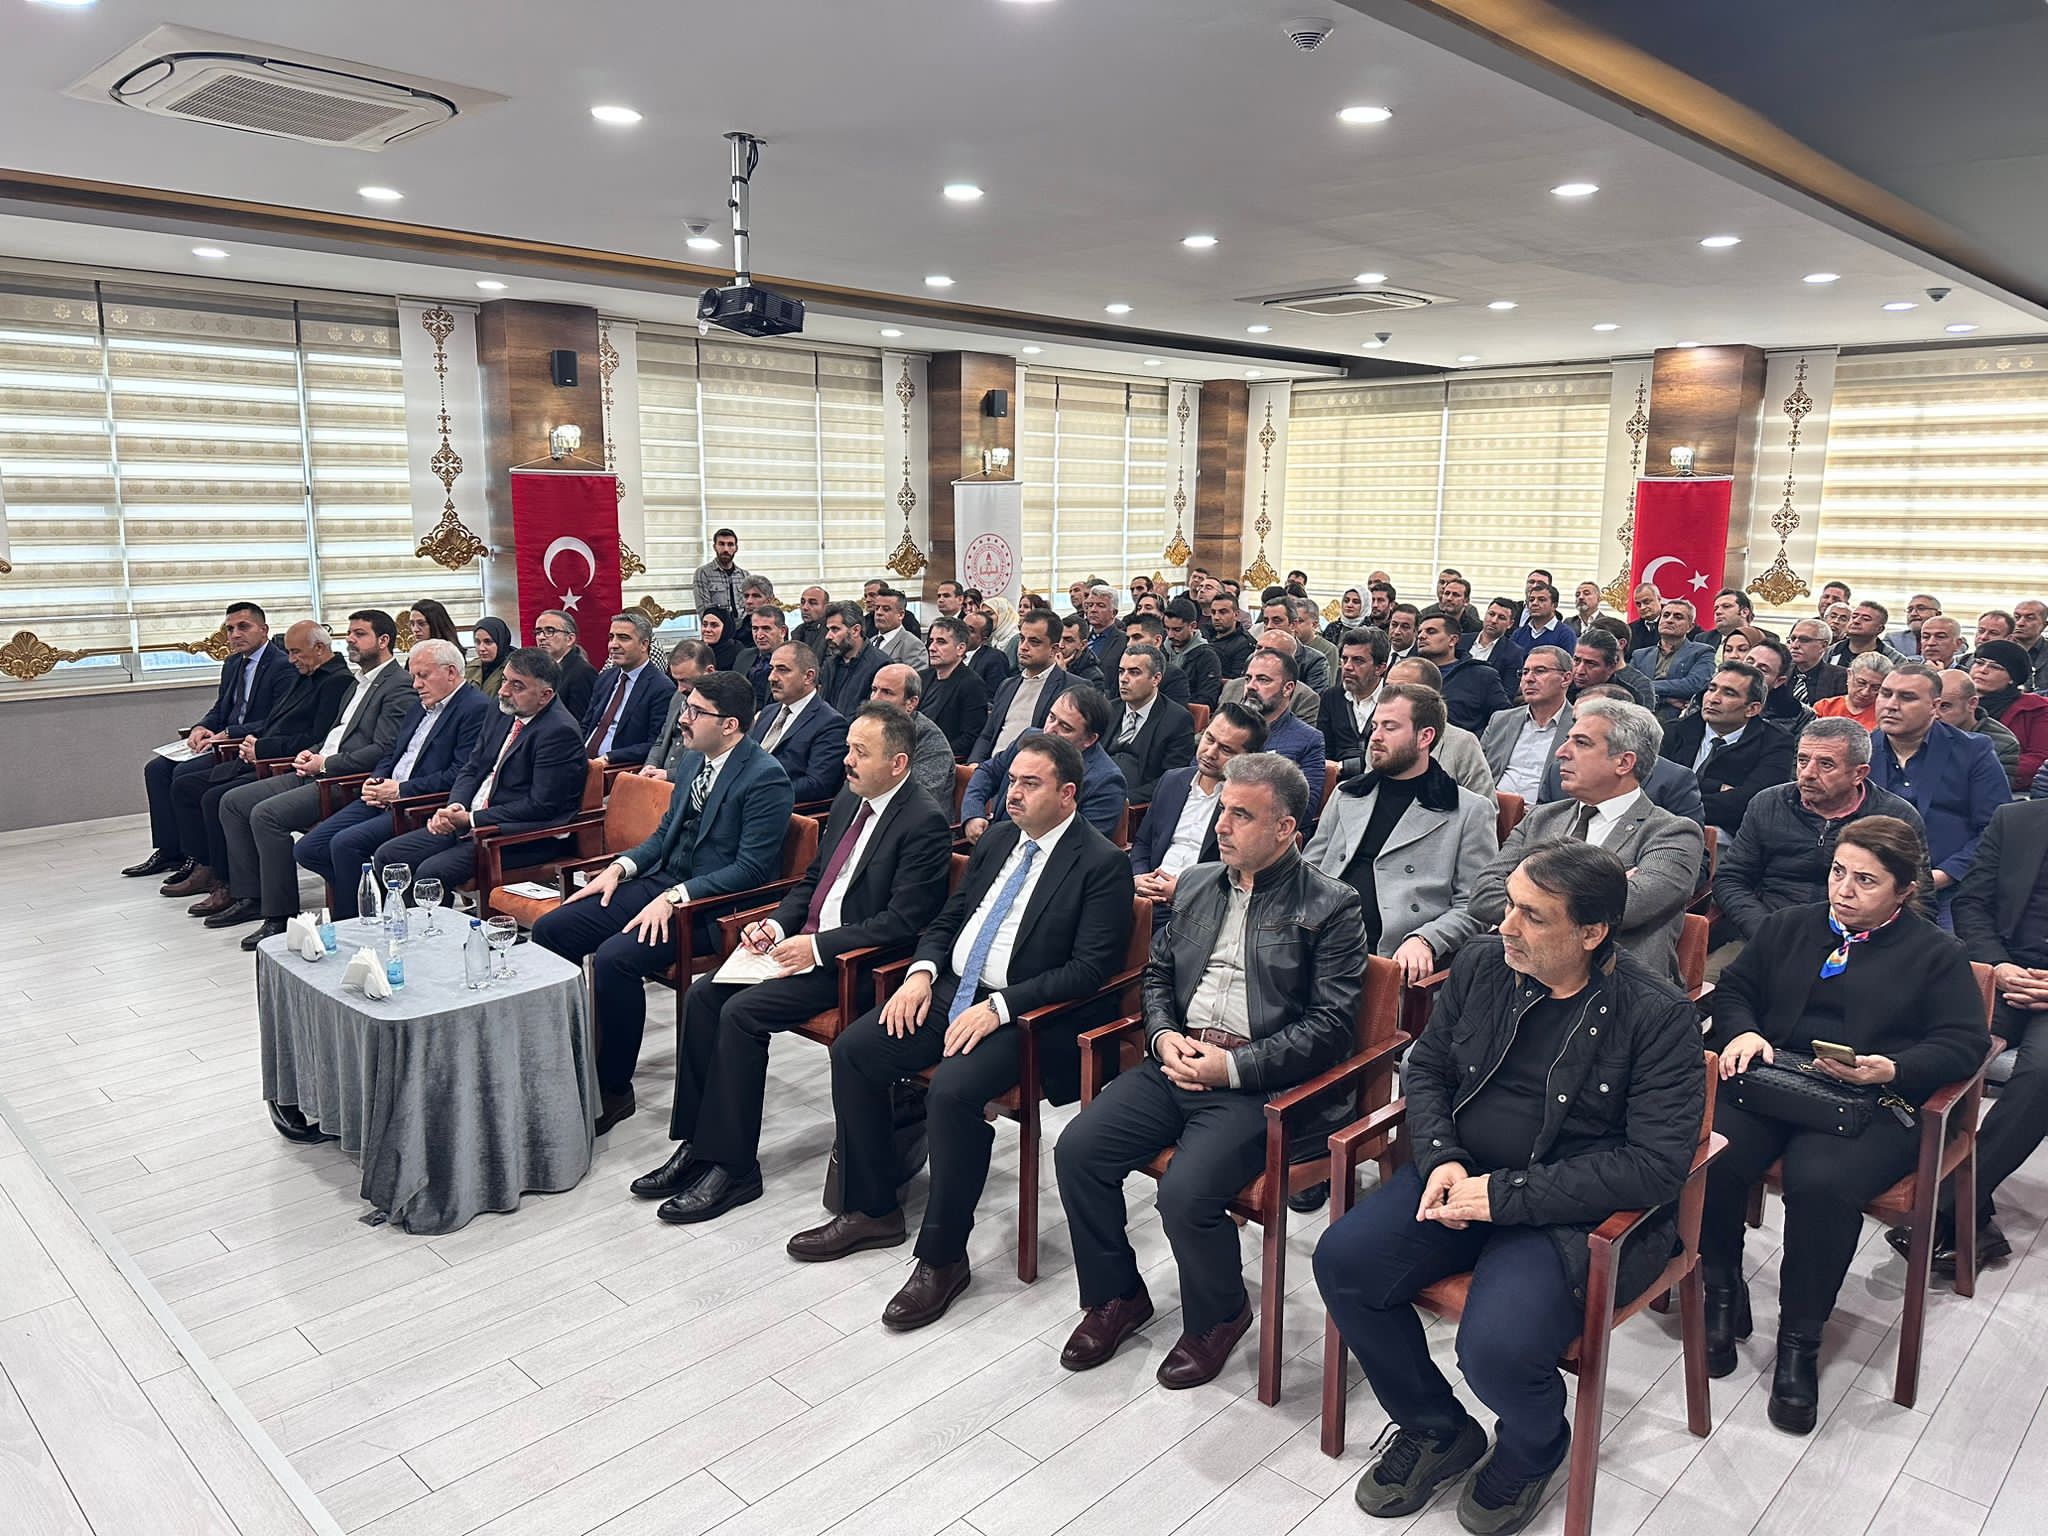 Milli Eğitim Bakan Yardımcısı Kemal Şamlıoğlu, Diyarbakır Öğretmenevi Toplantı Salonunda, sanayiciler ve öğretmenler ile bir araya geldi.